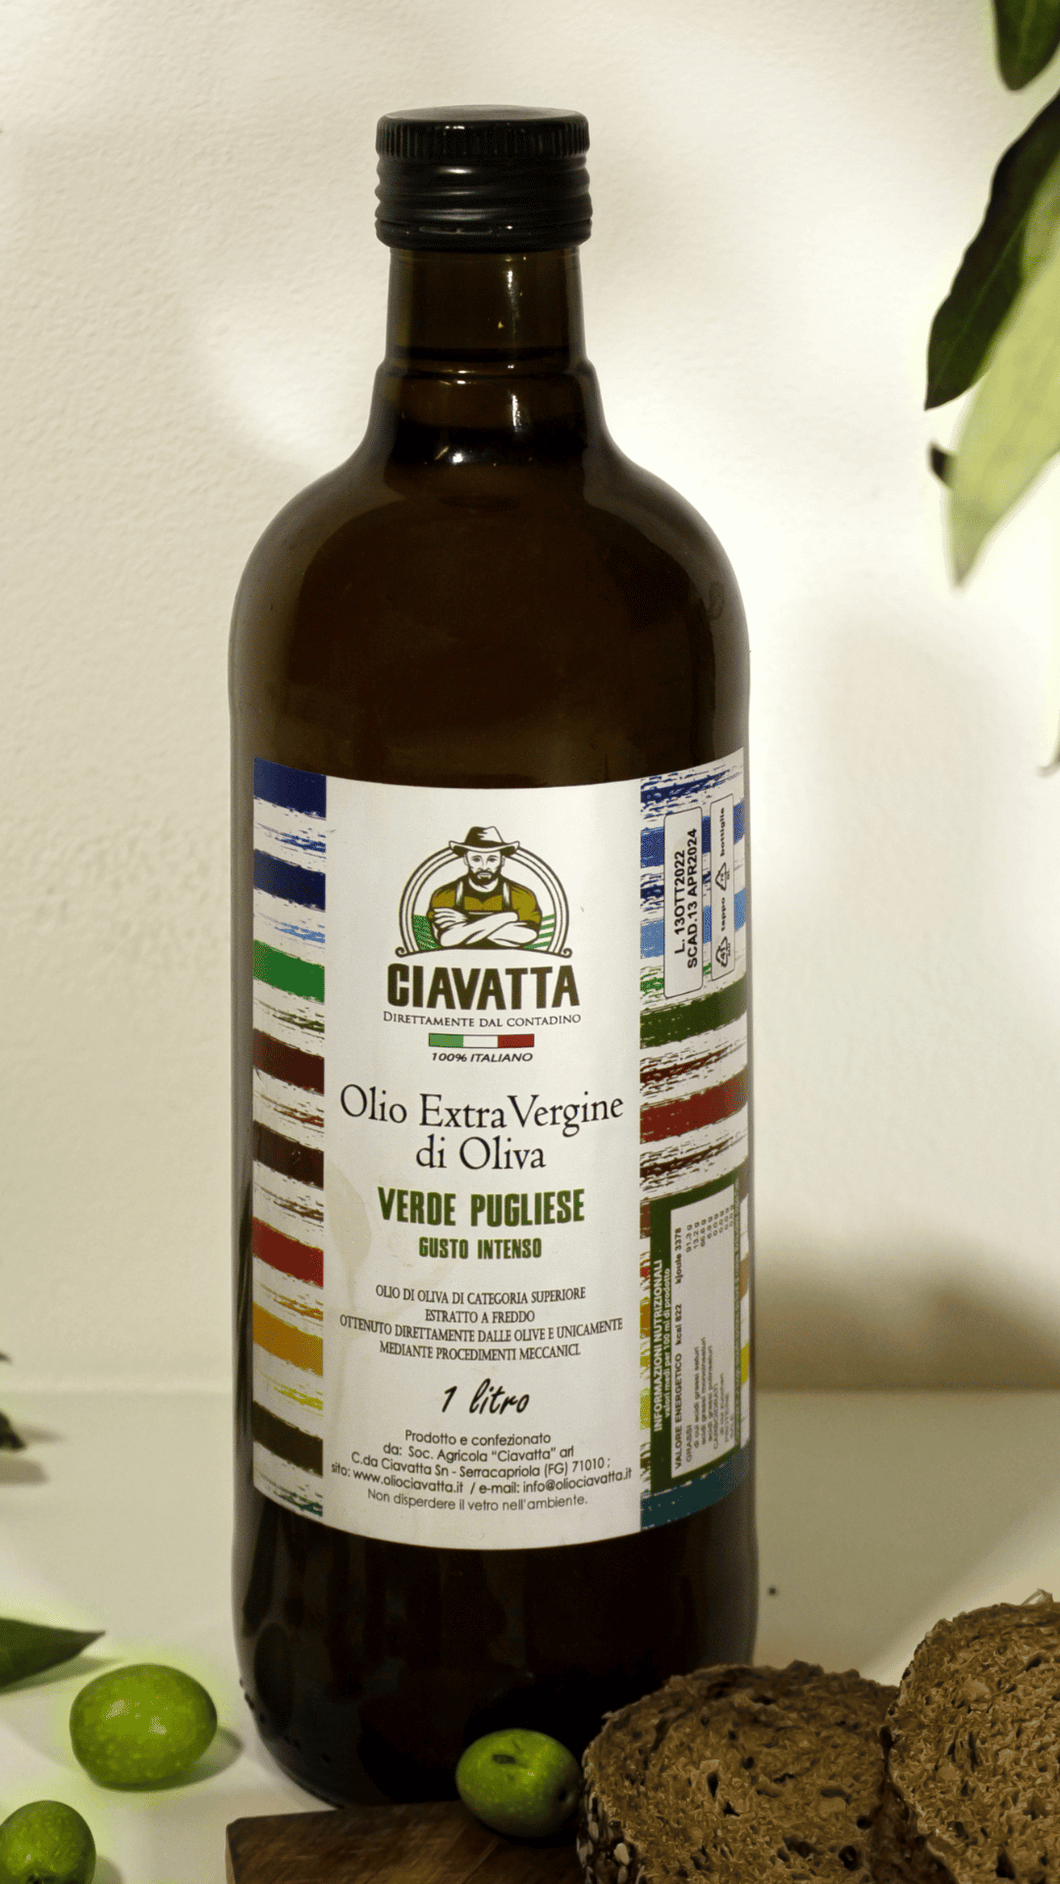 Olio Extravergine di Oliva Provenzale bottiglia da 1 litro